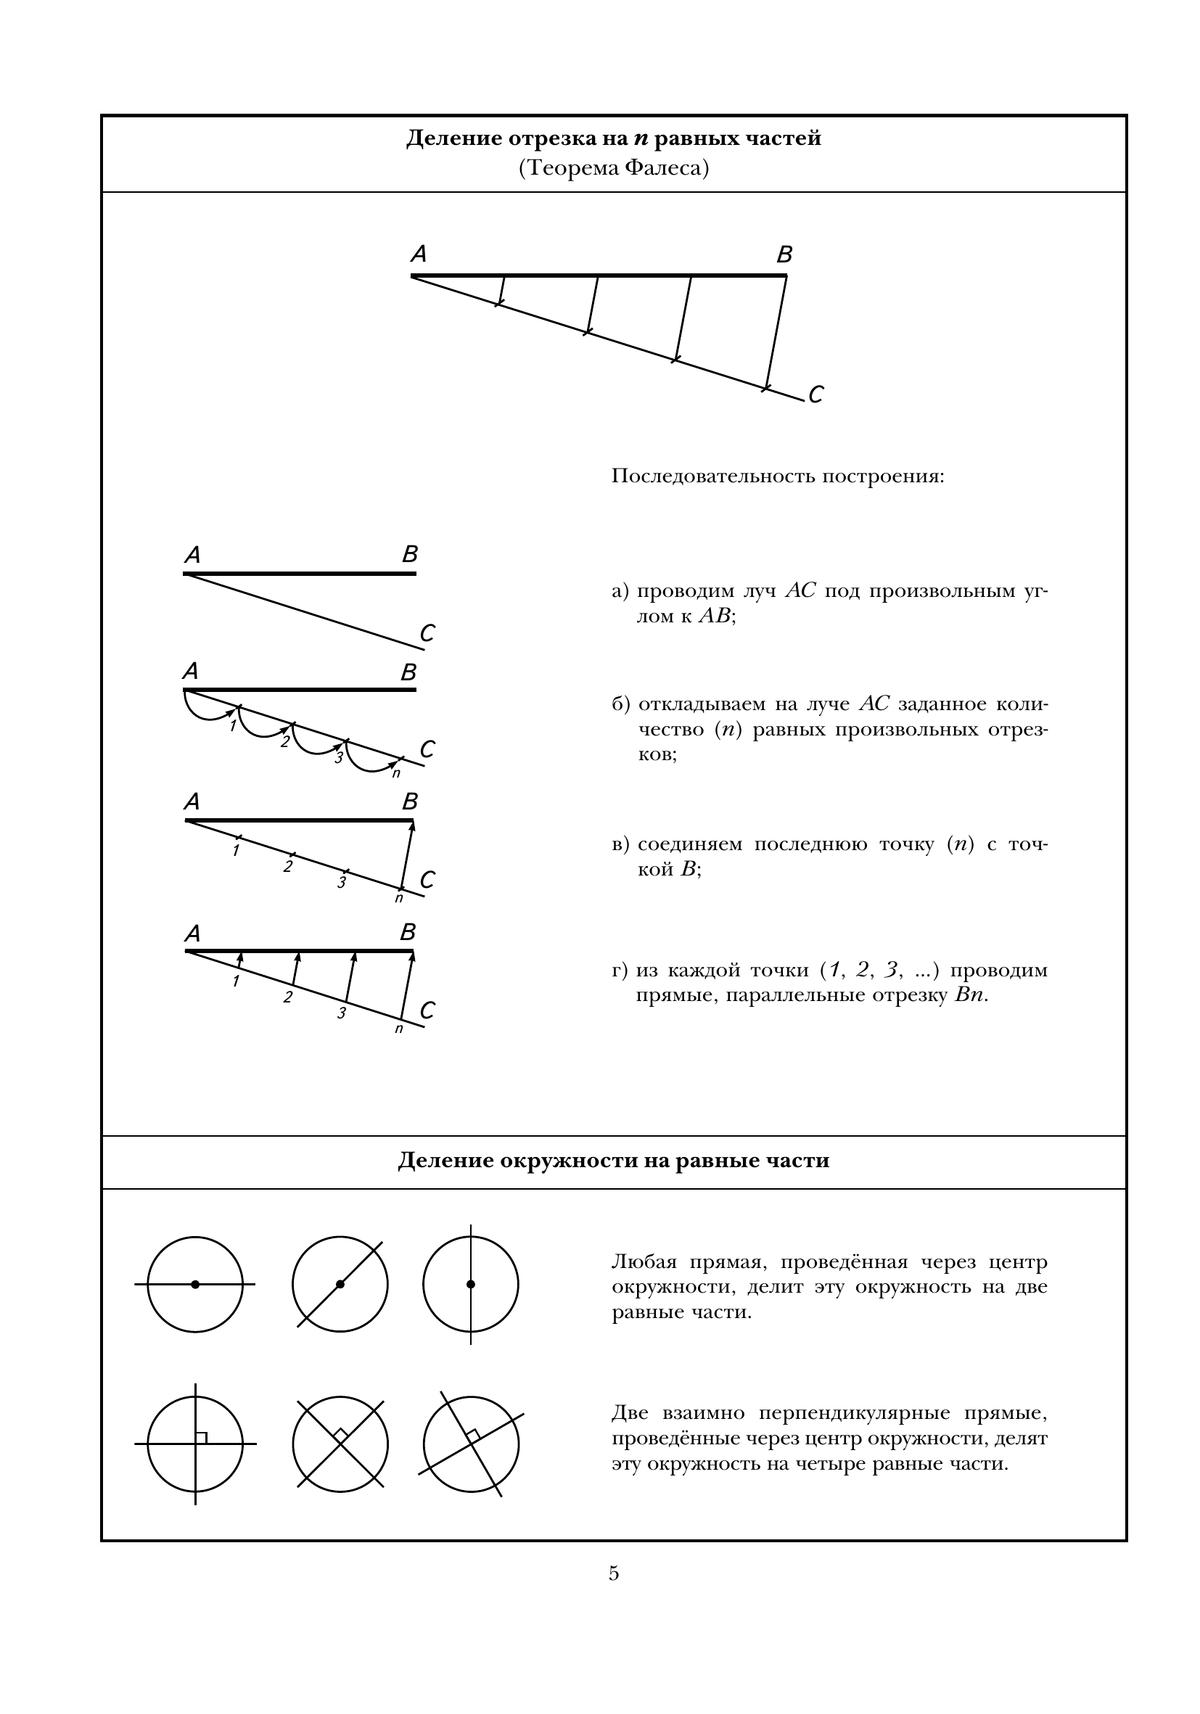 Черчение. Геометрические построения. Рабочая тетрадь №2. 7-9 классы 5